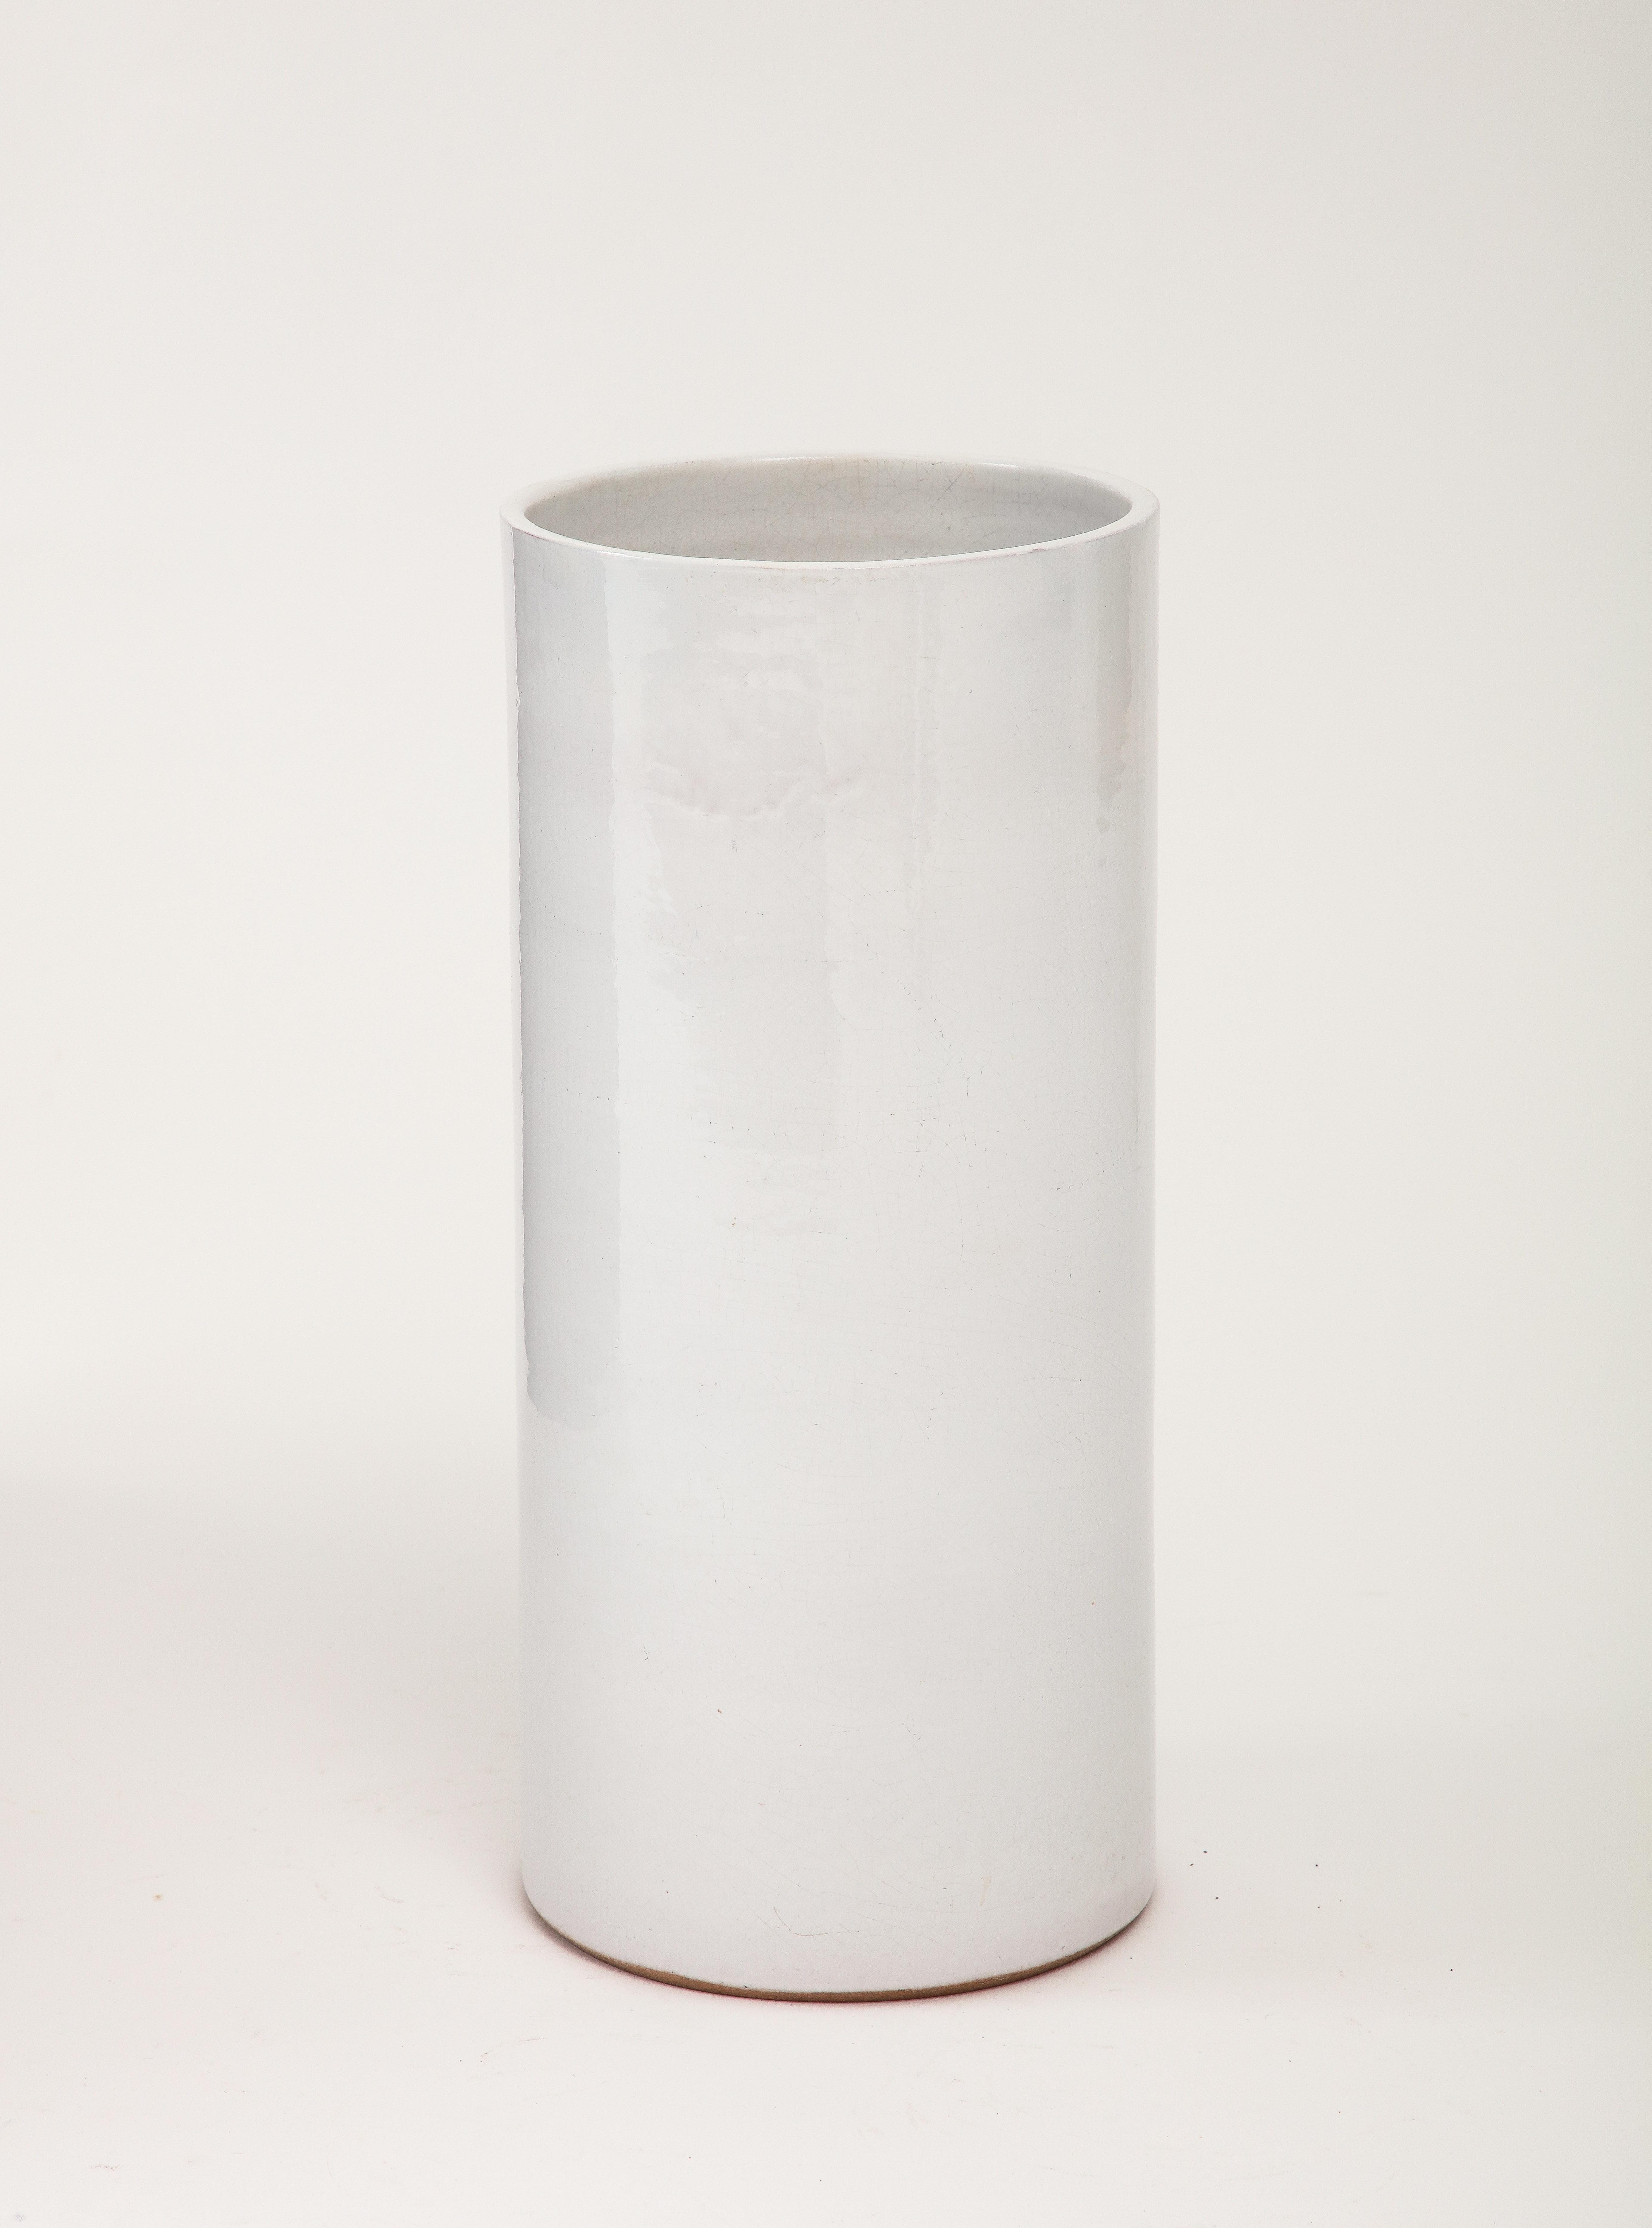 Vase cylindrique à glaçure craquelée gris-blanc, France, C.C.

Vase cylindrique en céramique craquelée blanc cassé - blanc cassé gris